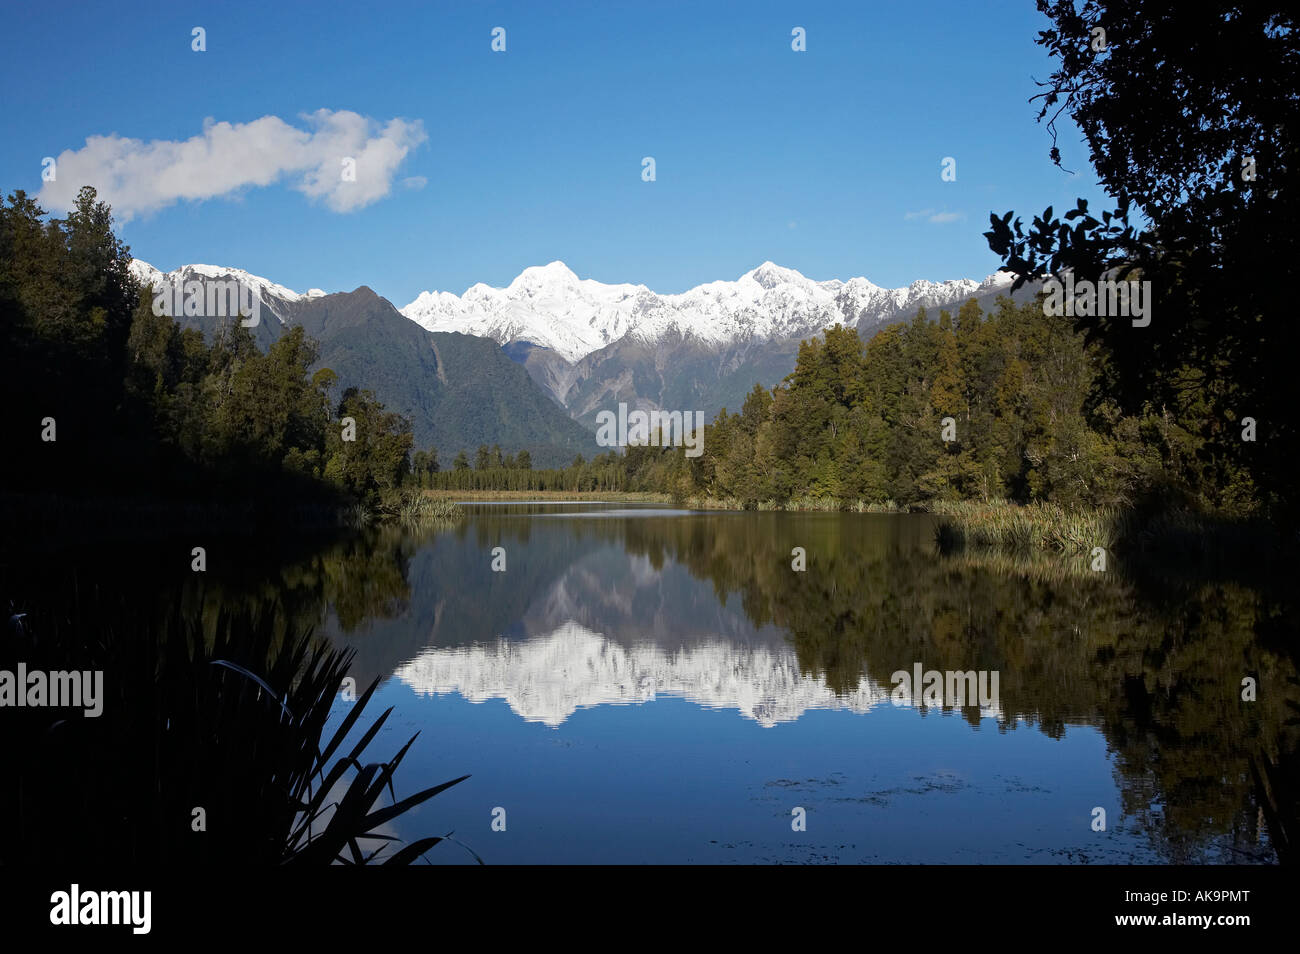 Sommets du Mt Tasman et Aoraki Mt Cook reflétée dans le lac Matheson Westland National Park Côte ouest de l'île du Sud Nouvelle-Zélande Banque D'Images